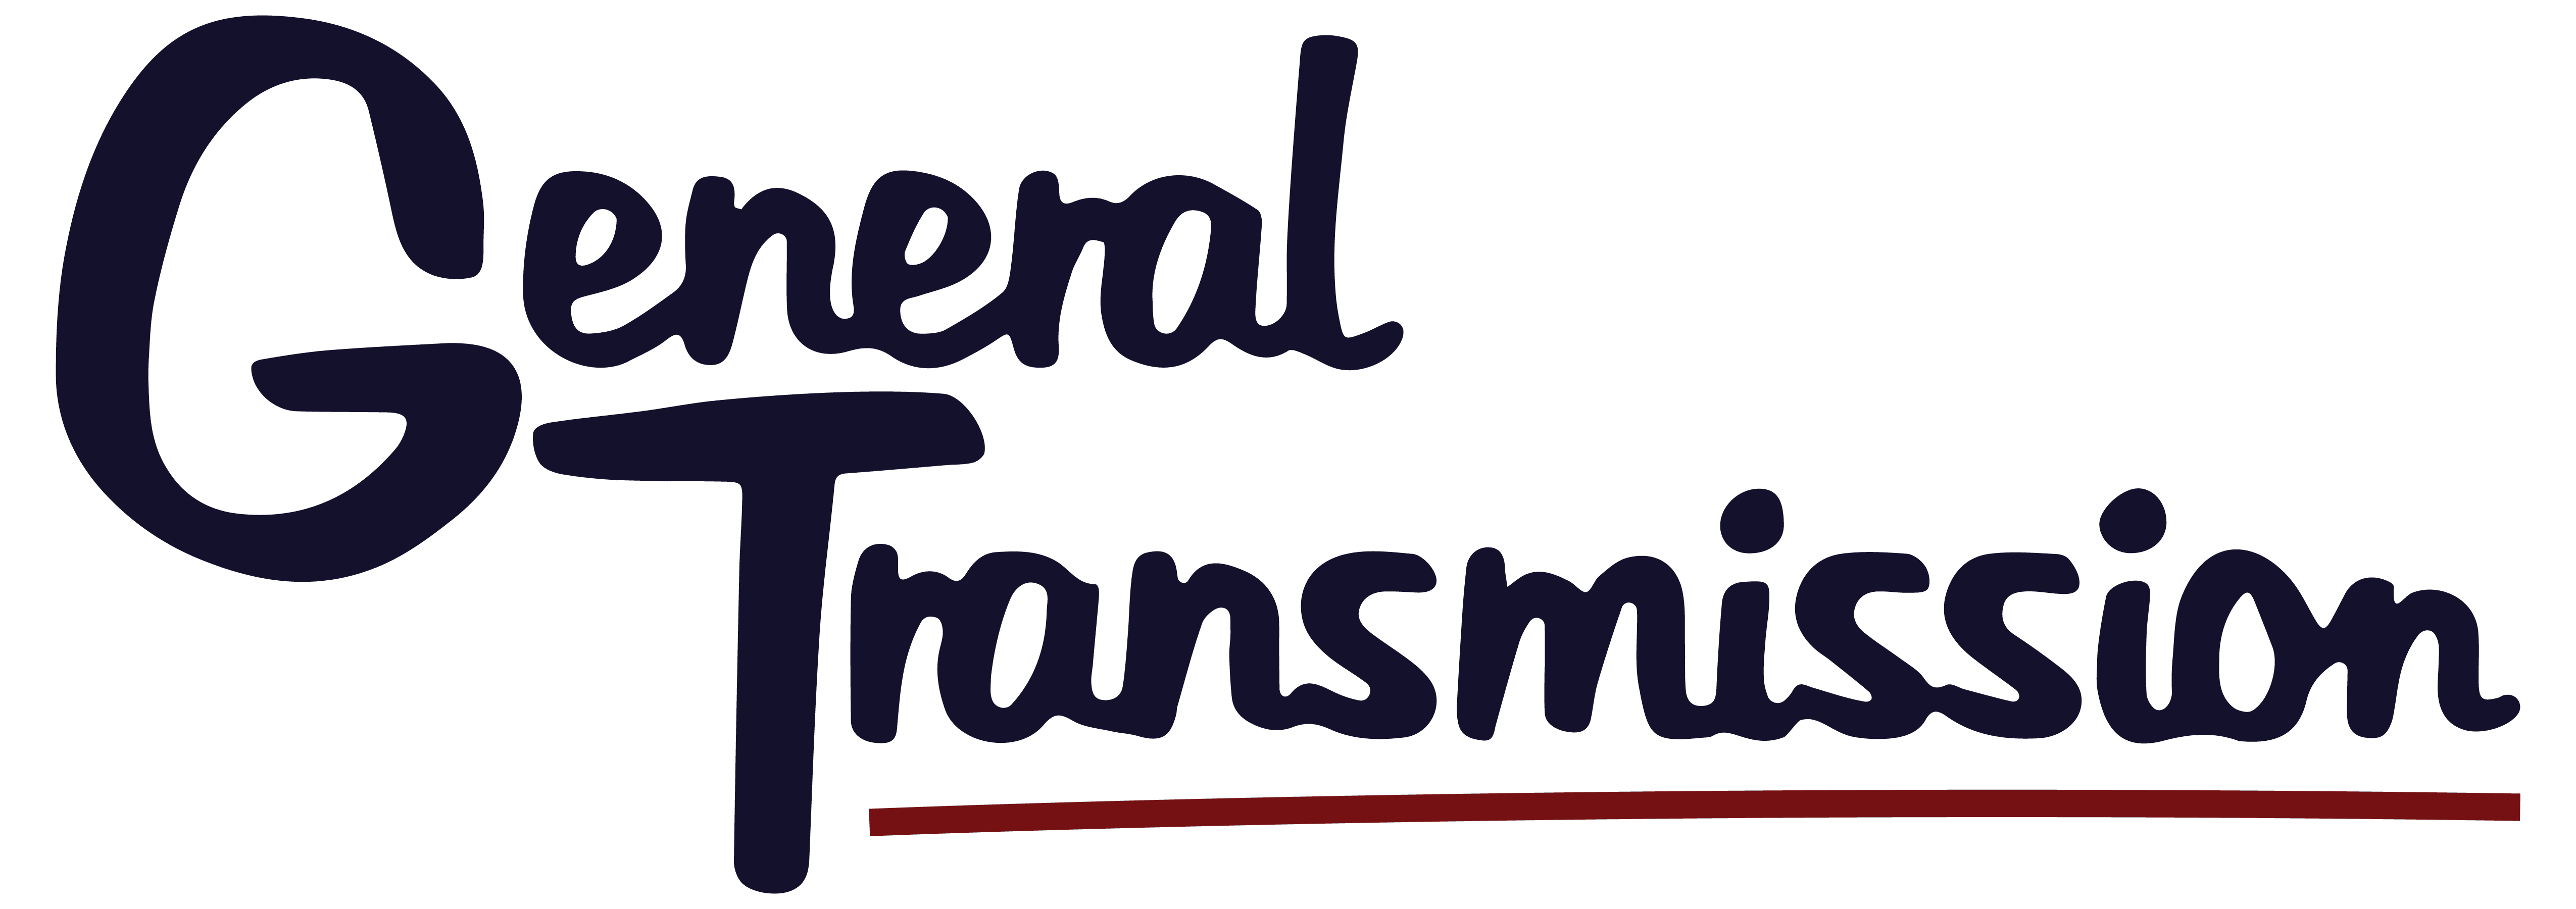 General Transmission